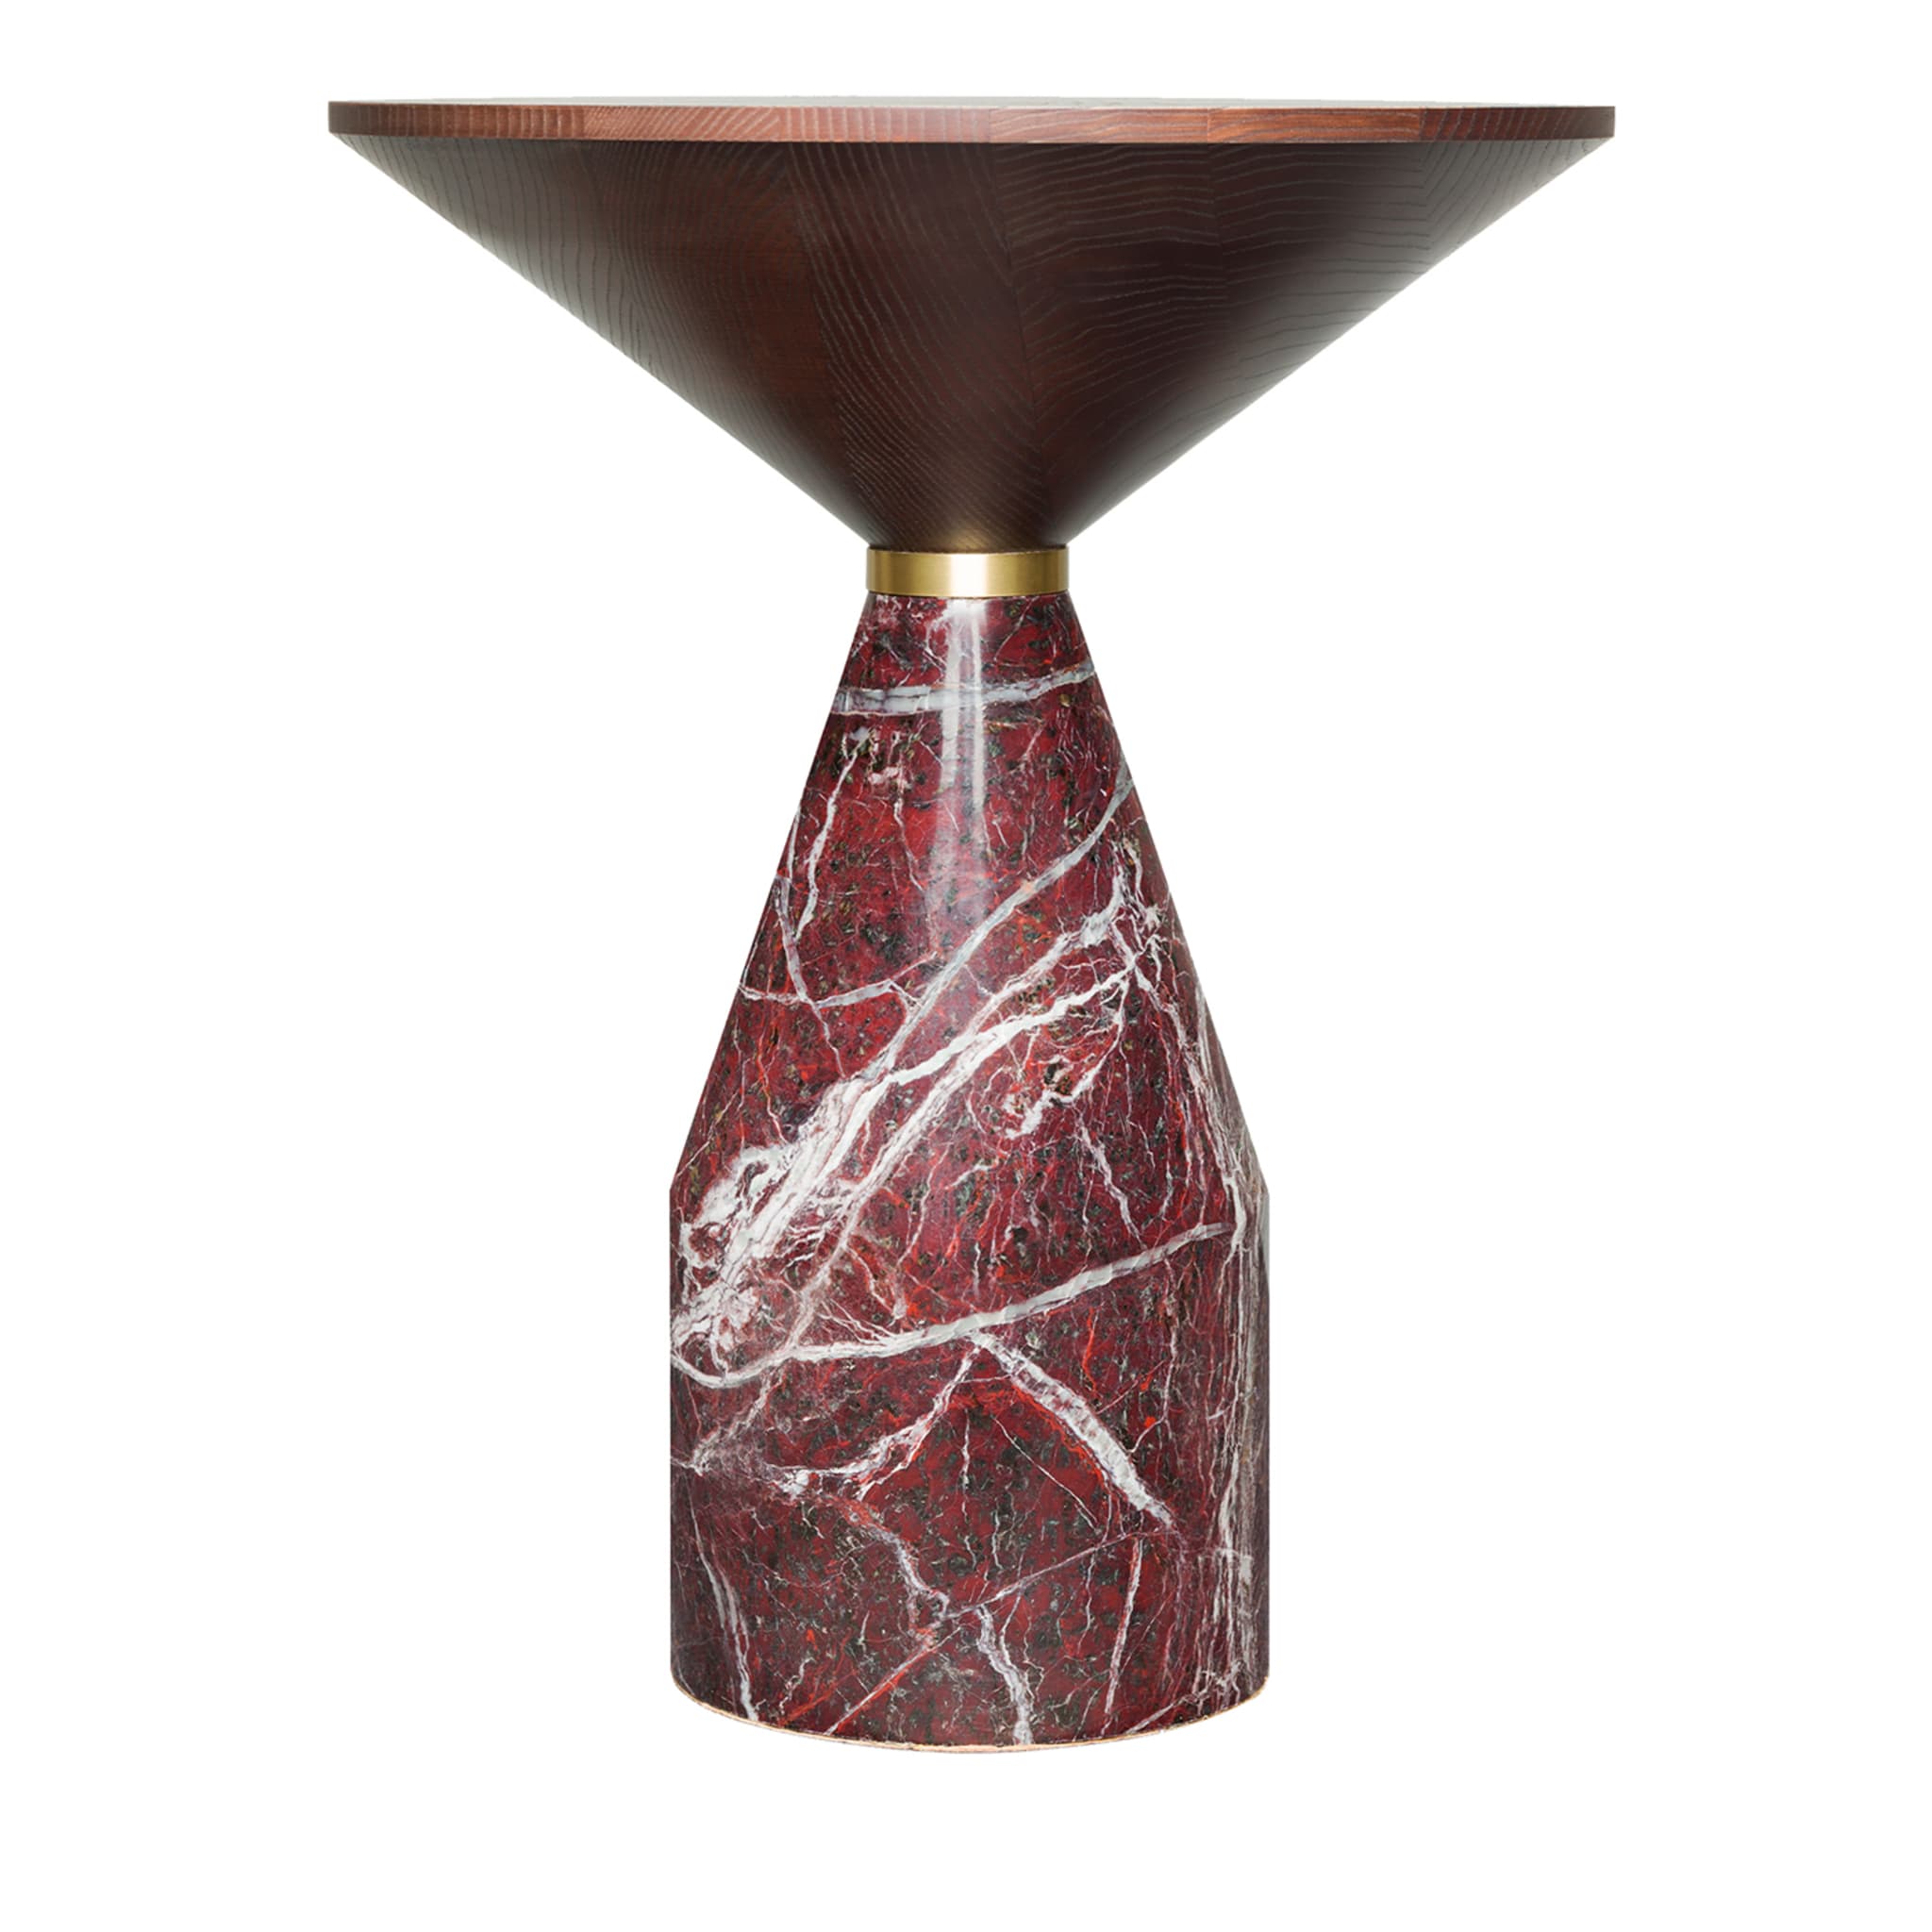 Petite table en marbre rouge Cino - Vue principale